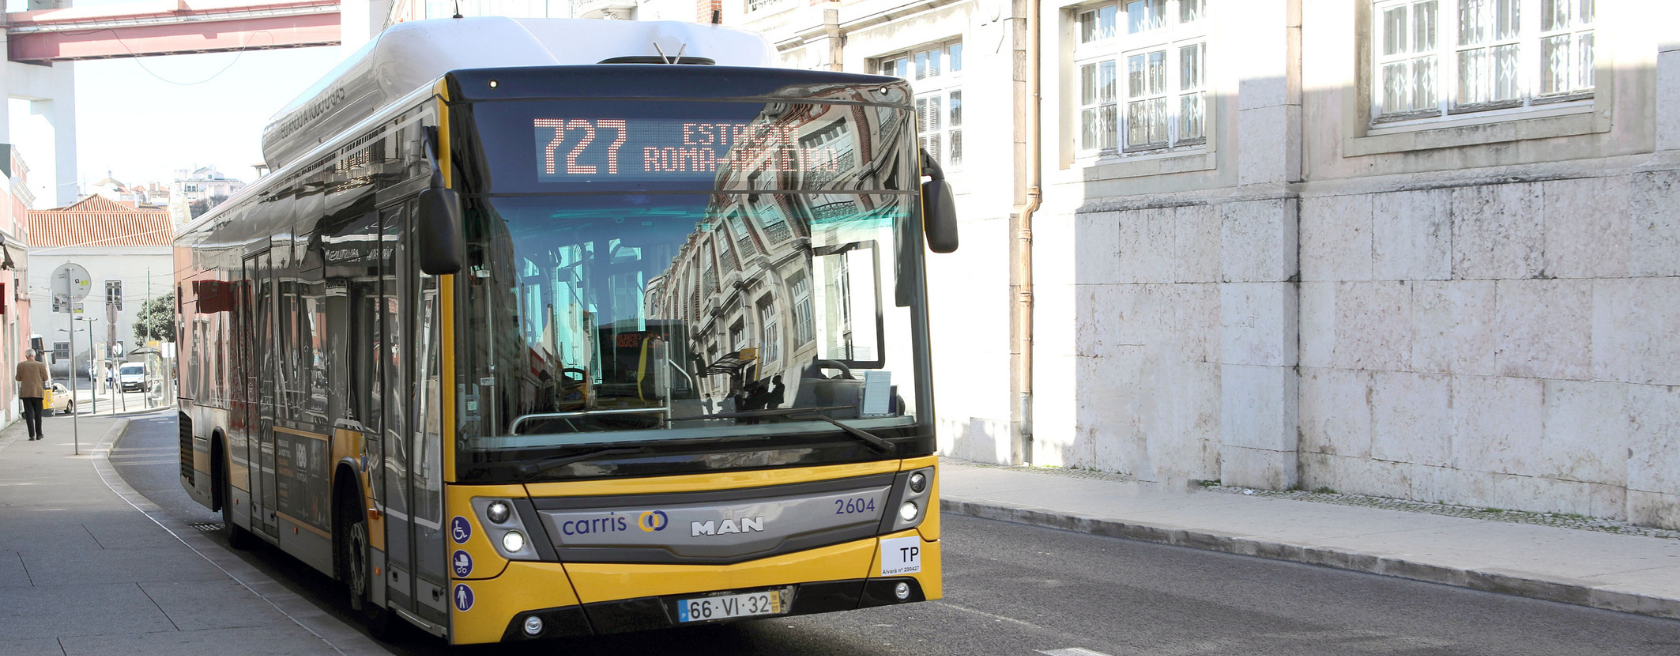 Renovação da frota de veículos de transporte público urbanos coletivos de passageiros da Carris